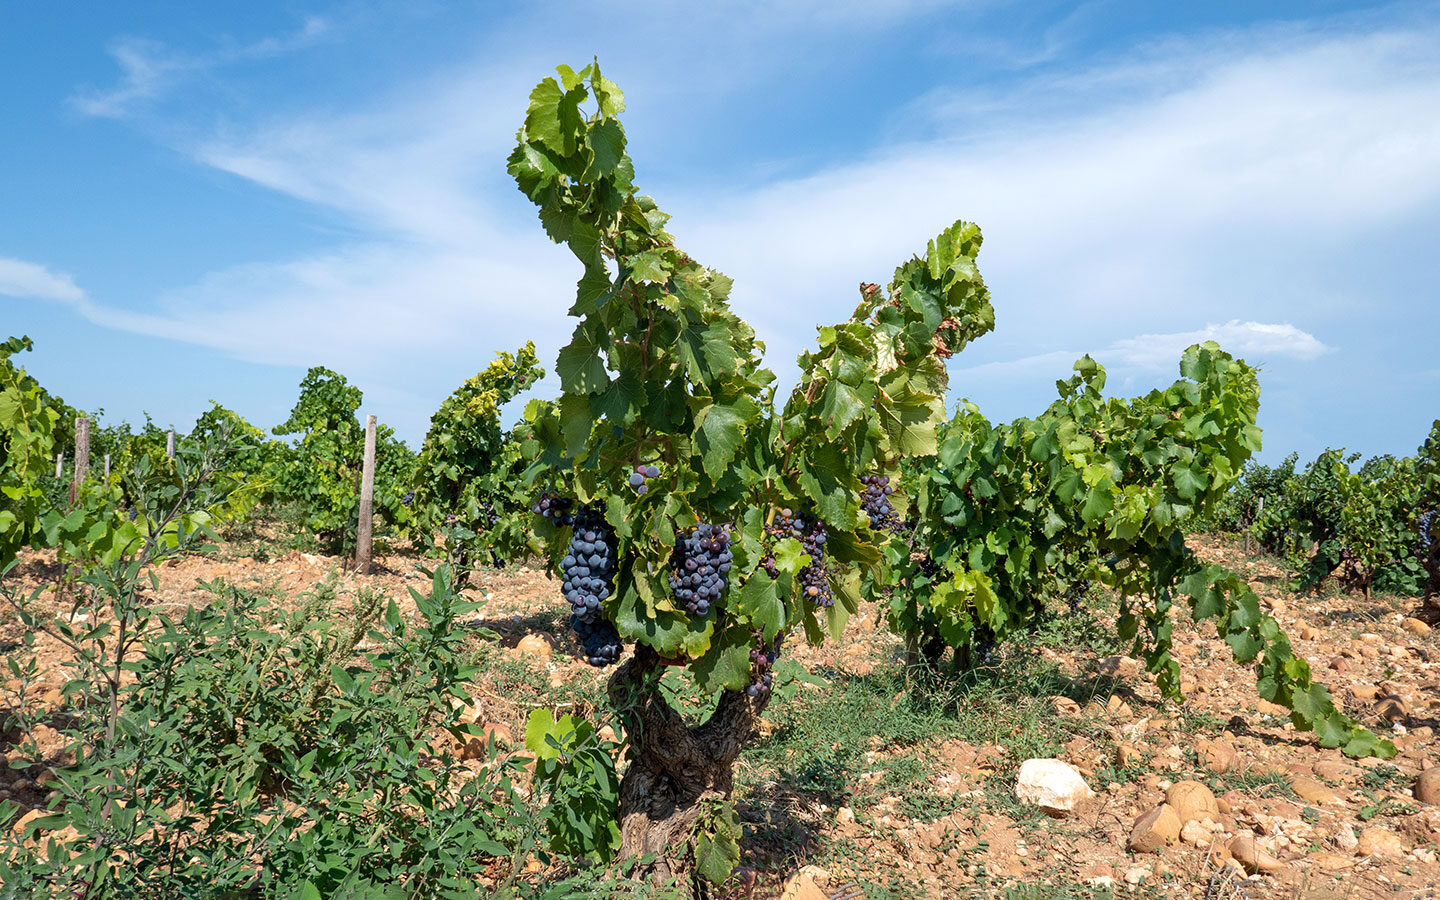 Grapes growing in the Côte du Rhône vineyards